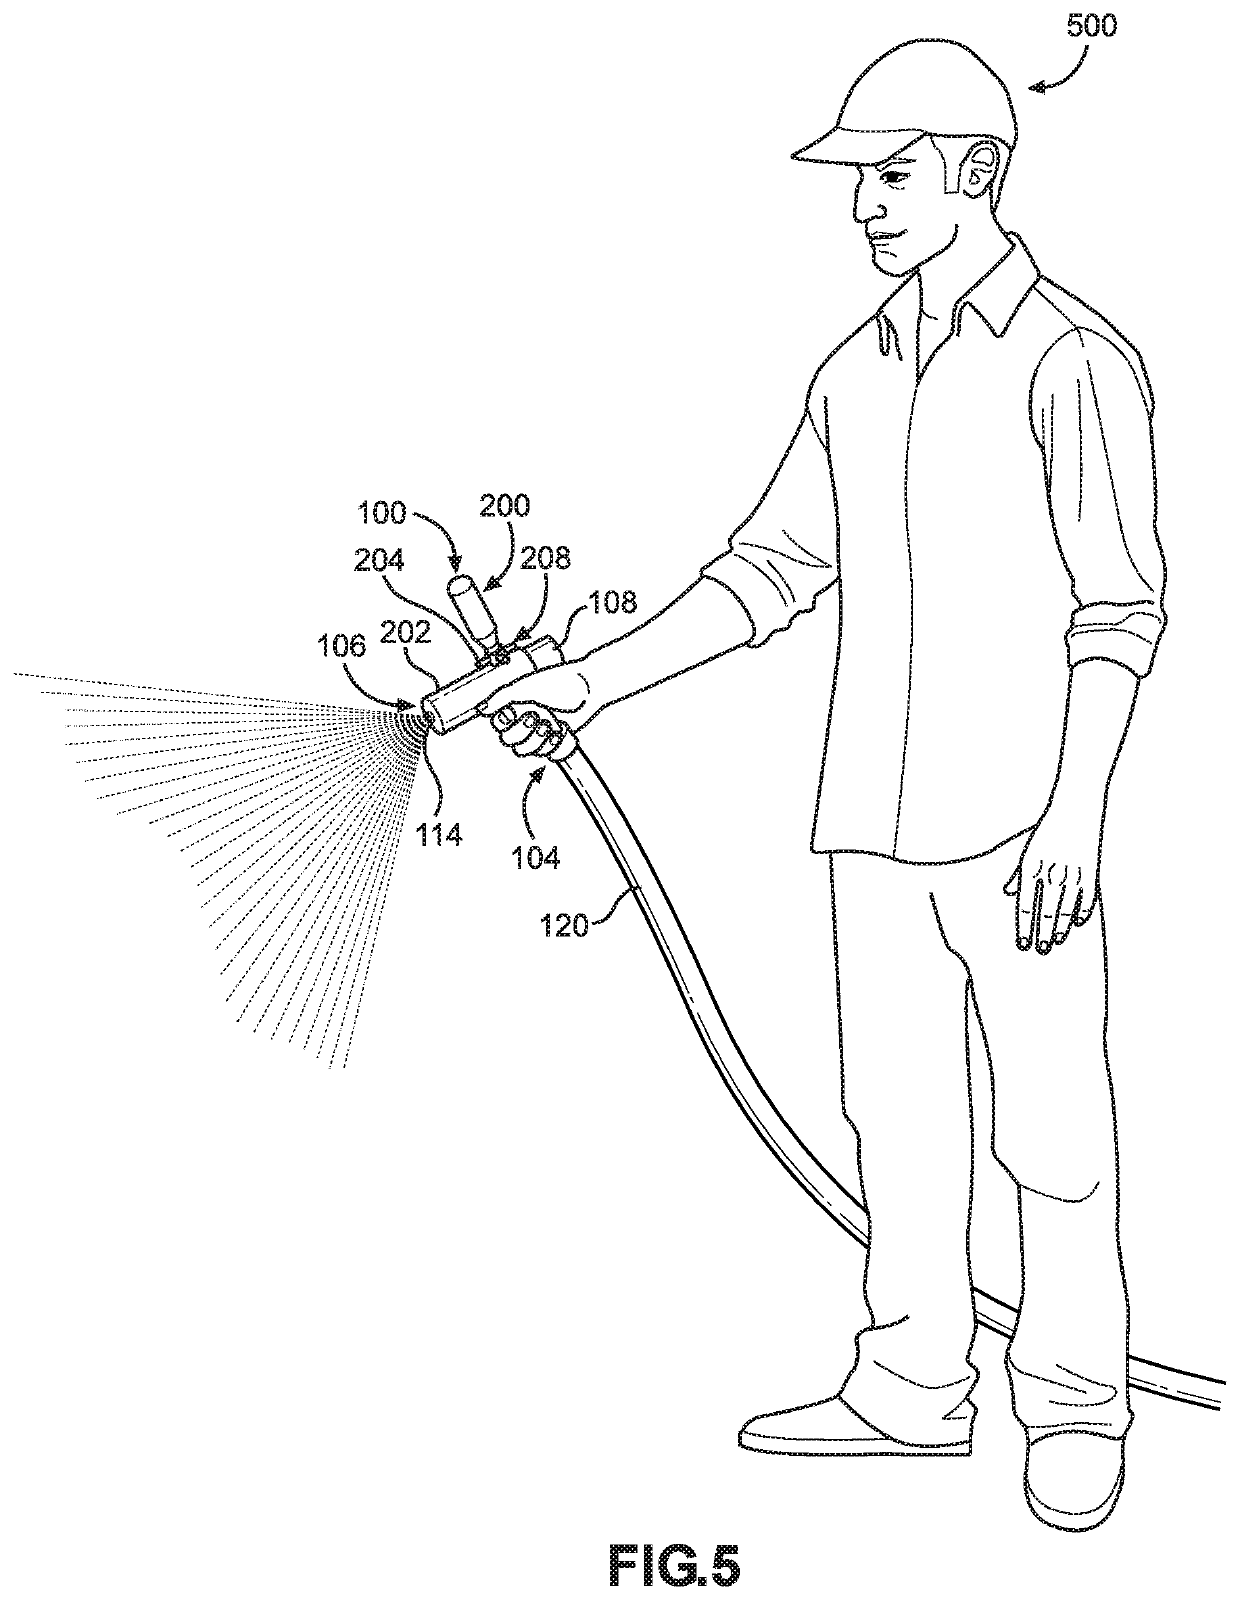 Sprayer attachment for a garden hose